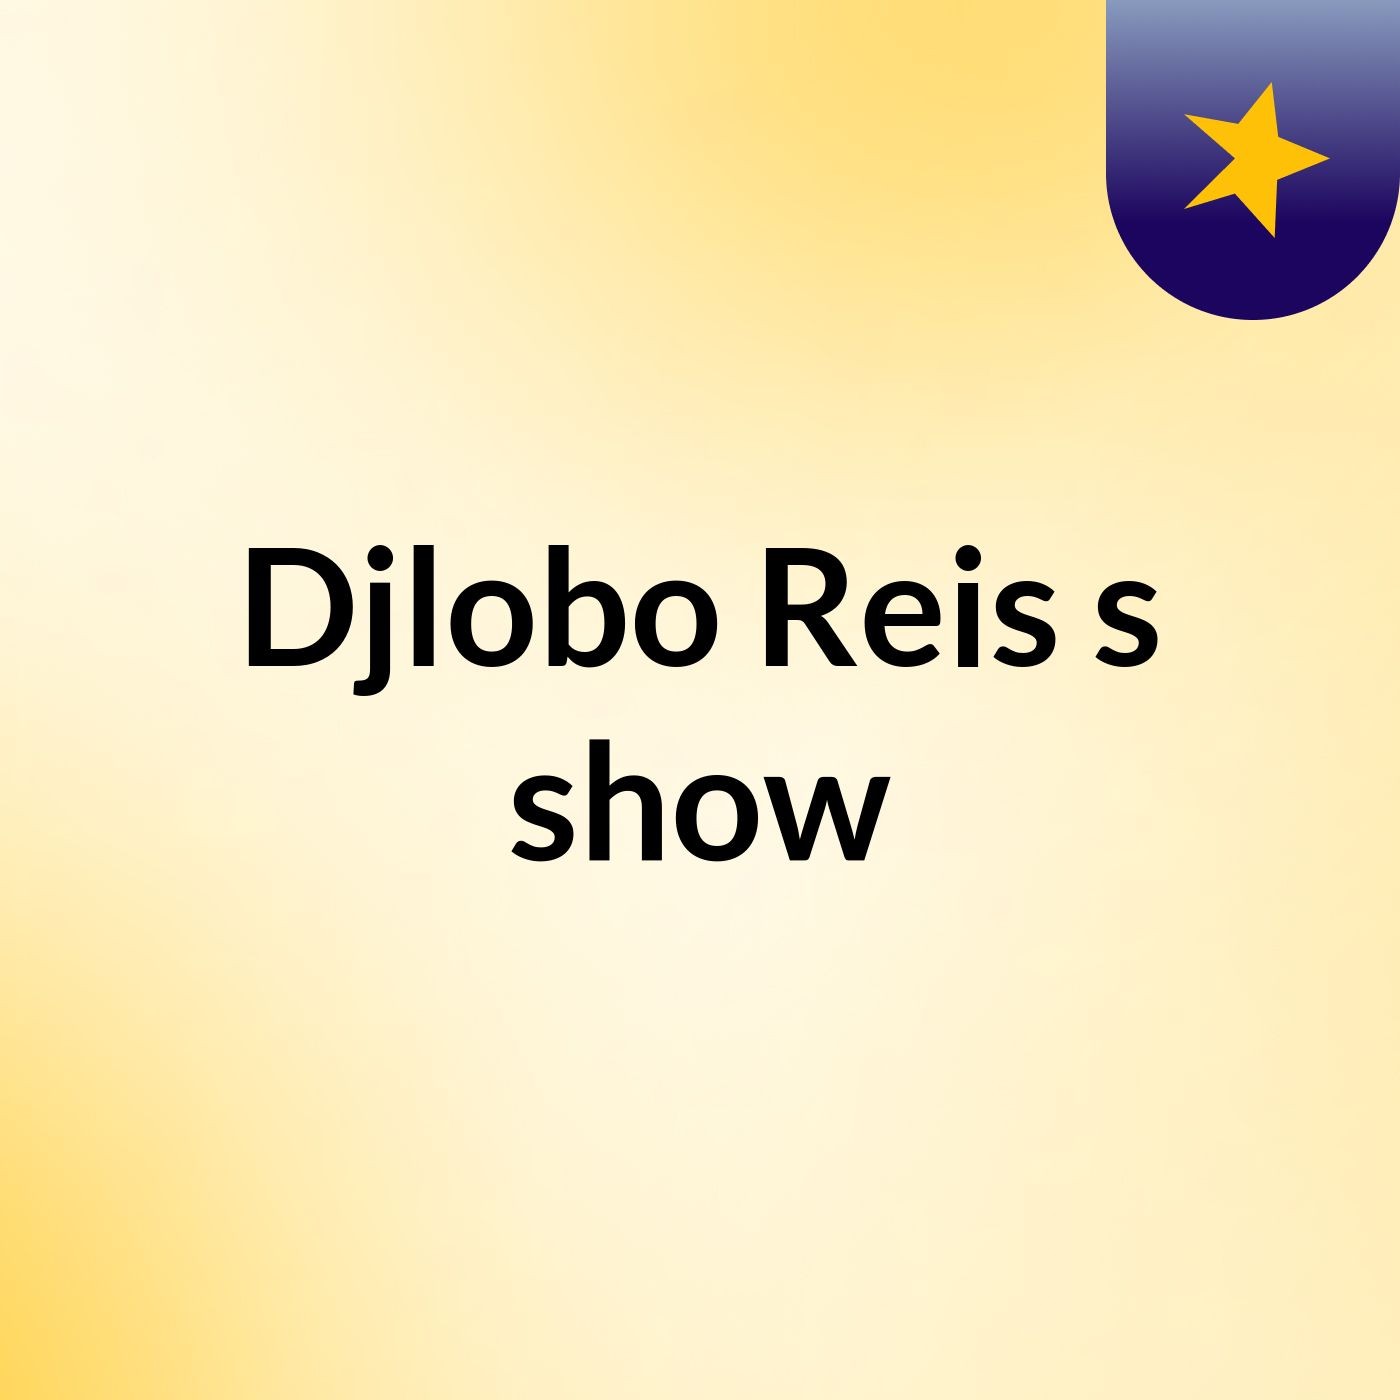 Djlobo Reis's show